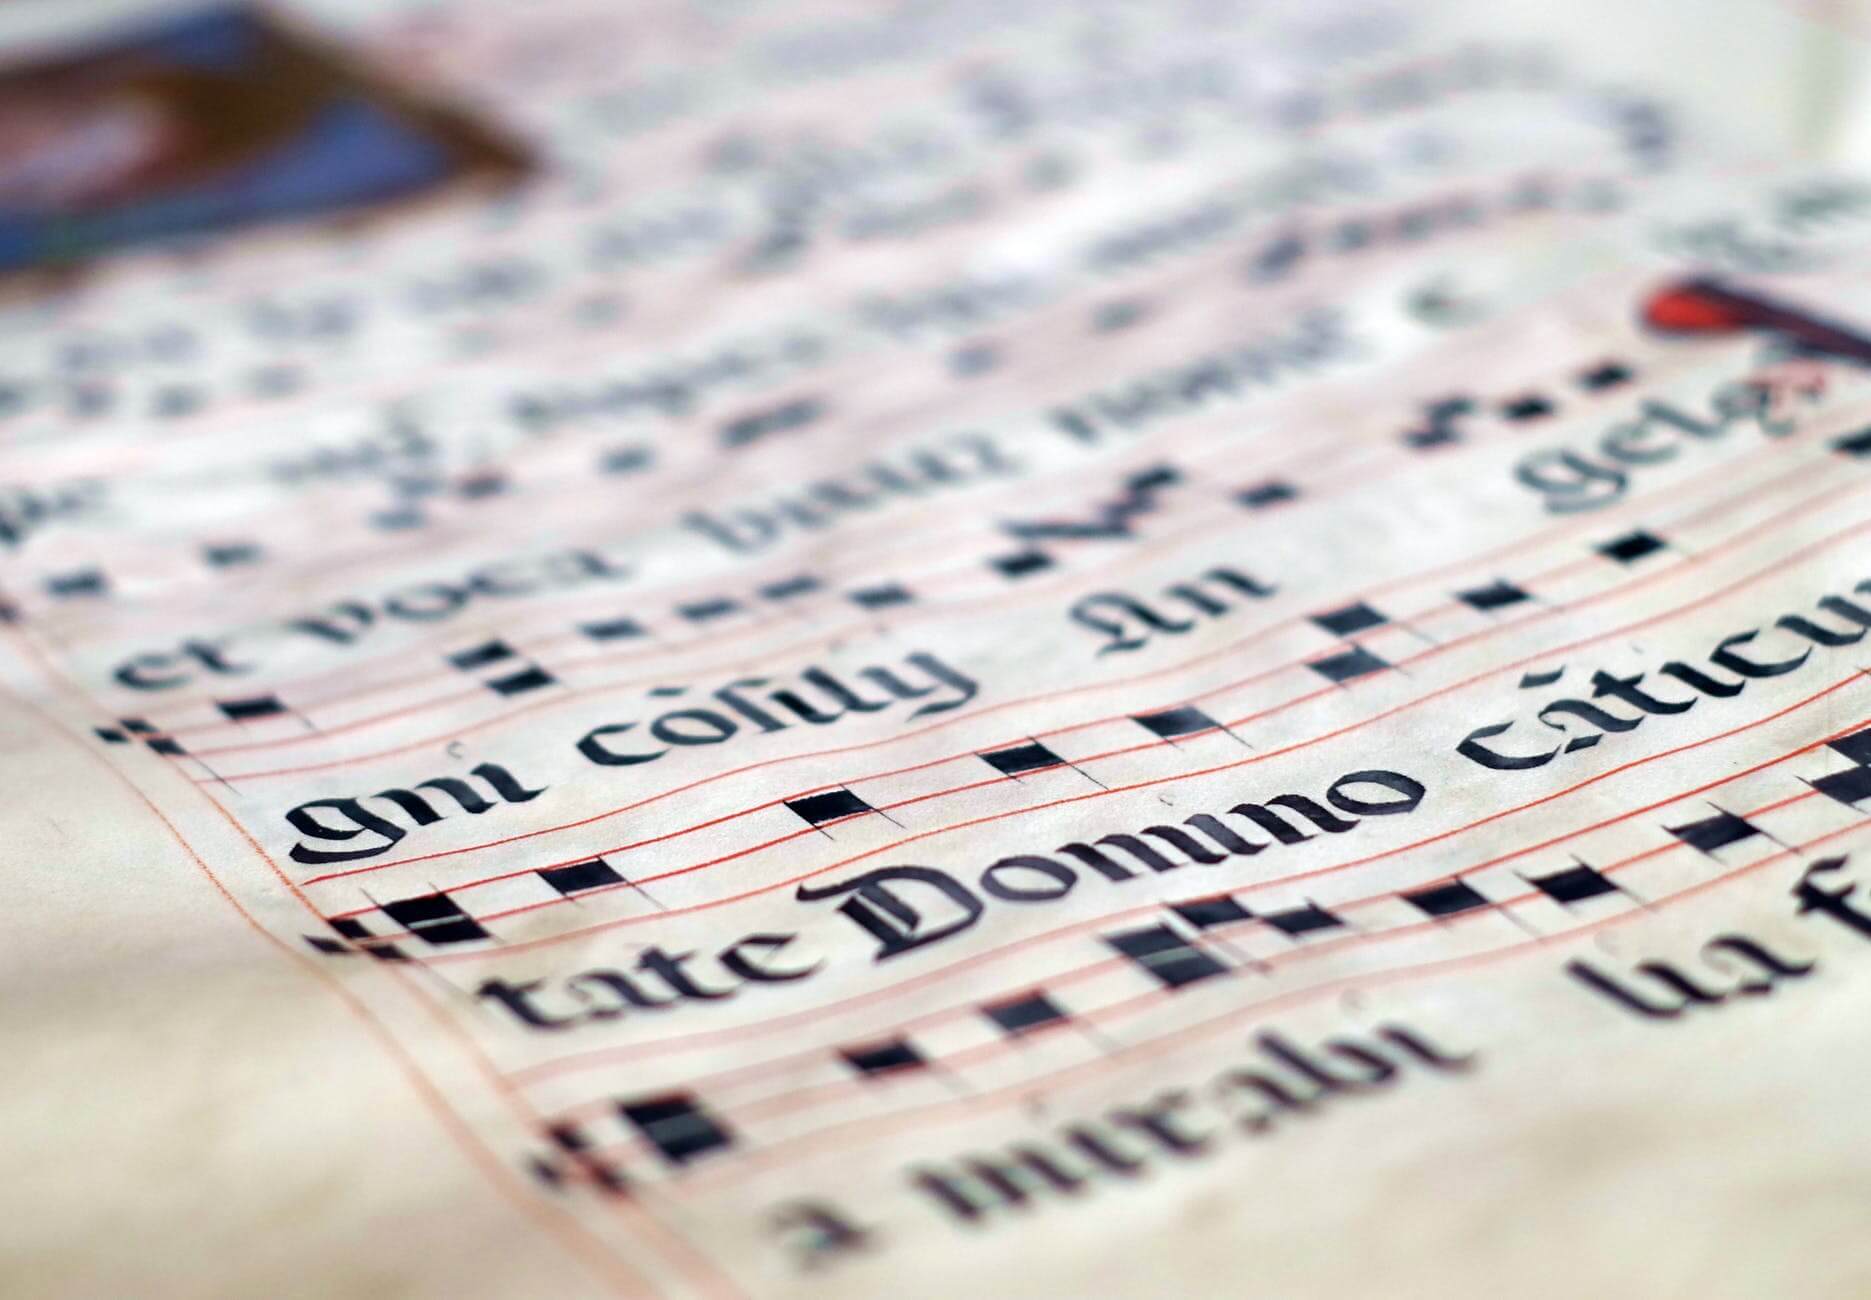 Memorize Text As a Singer